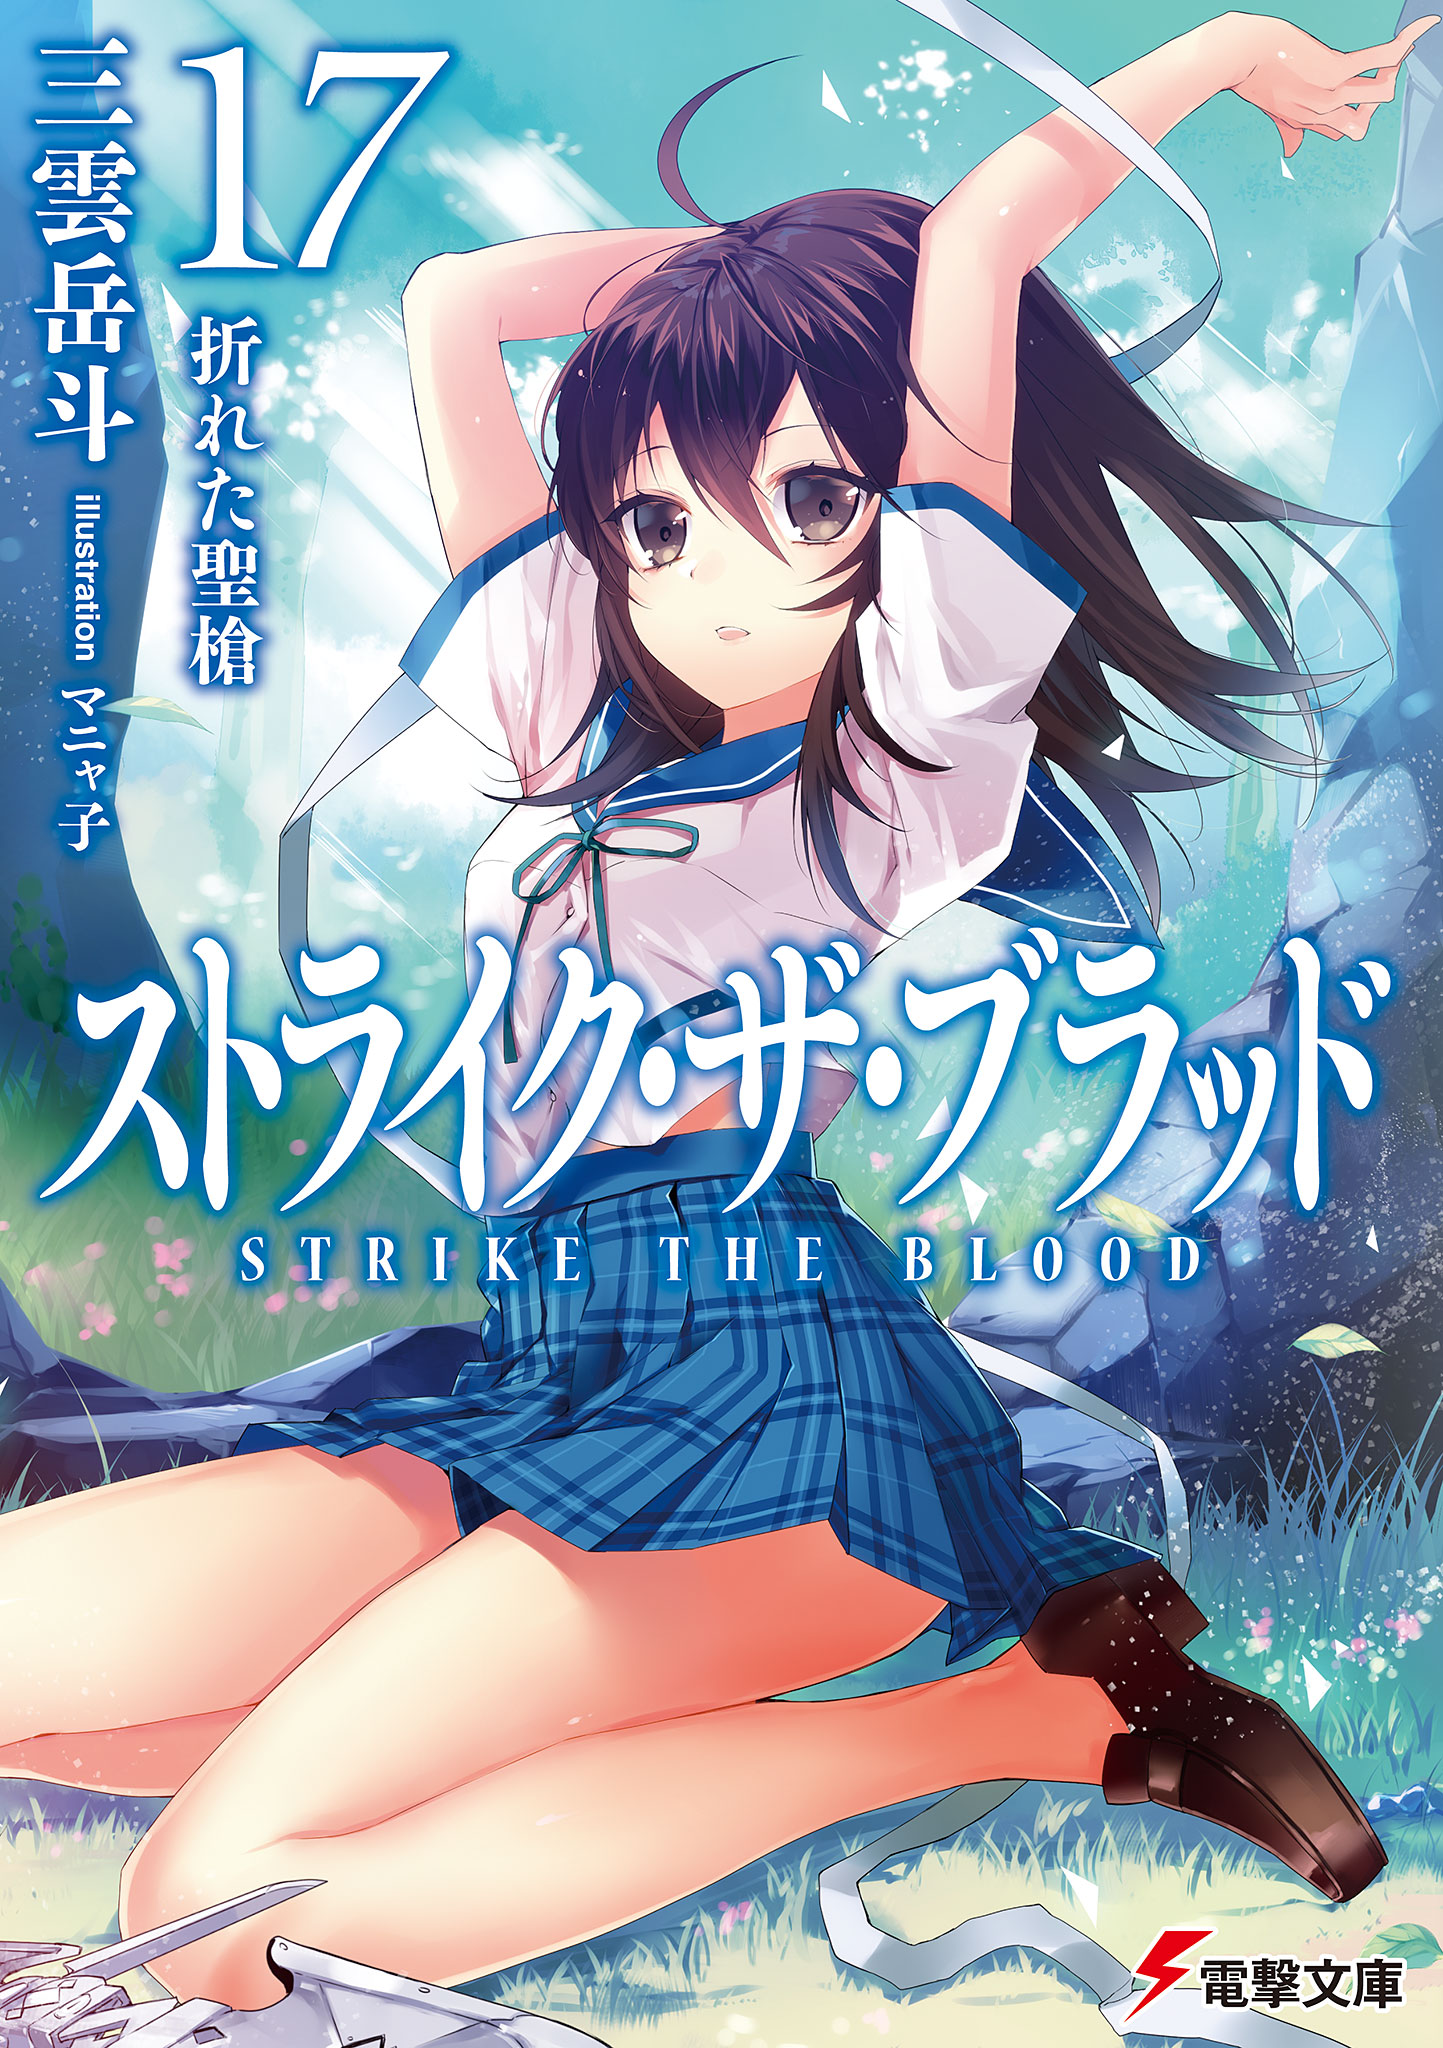 Light Novel Volume 2, Strike The Blood Wiki